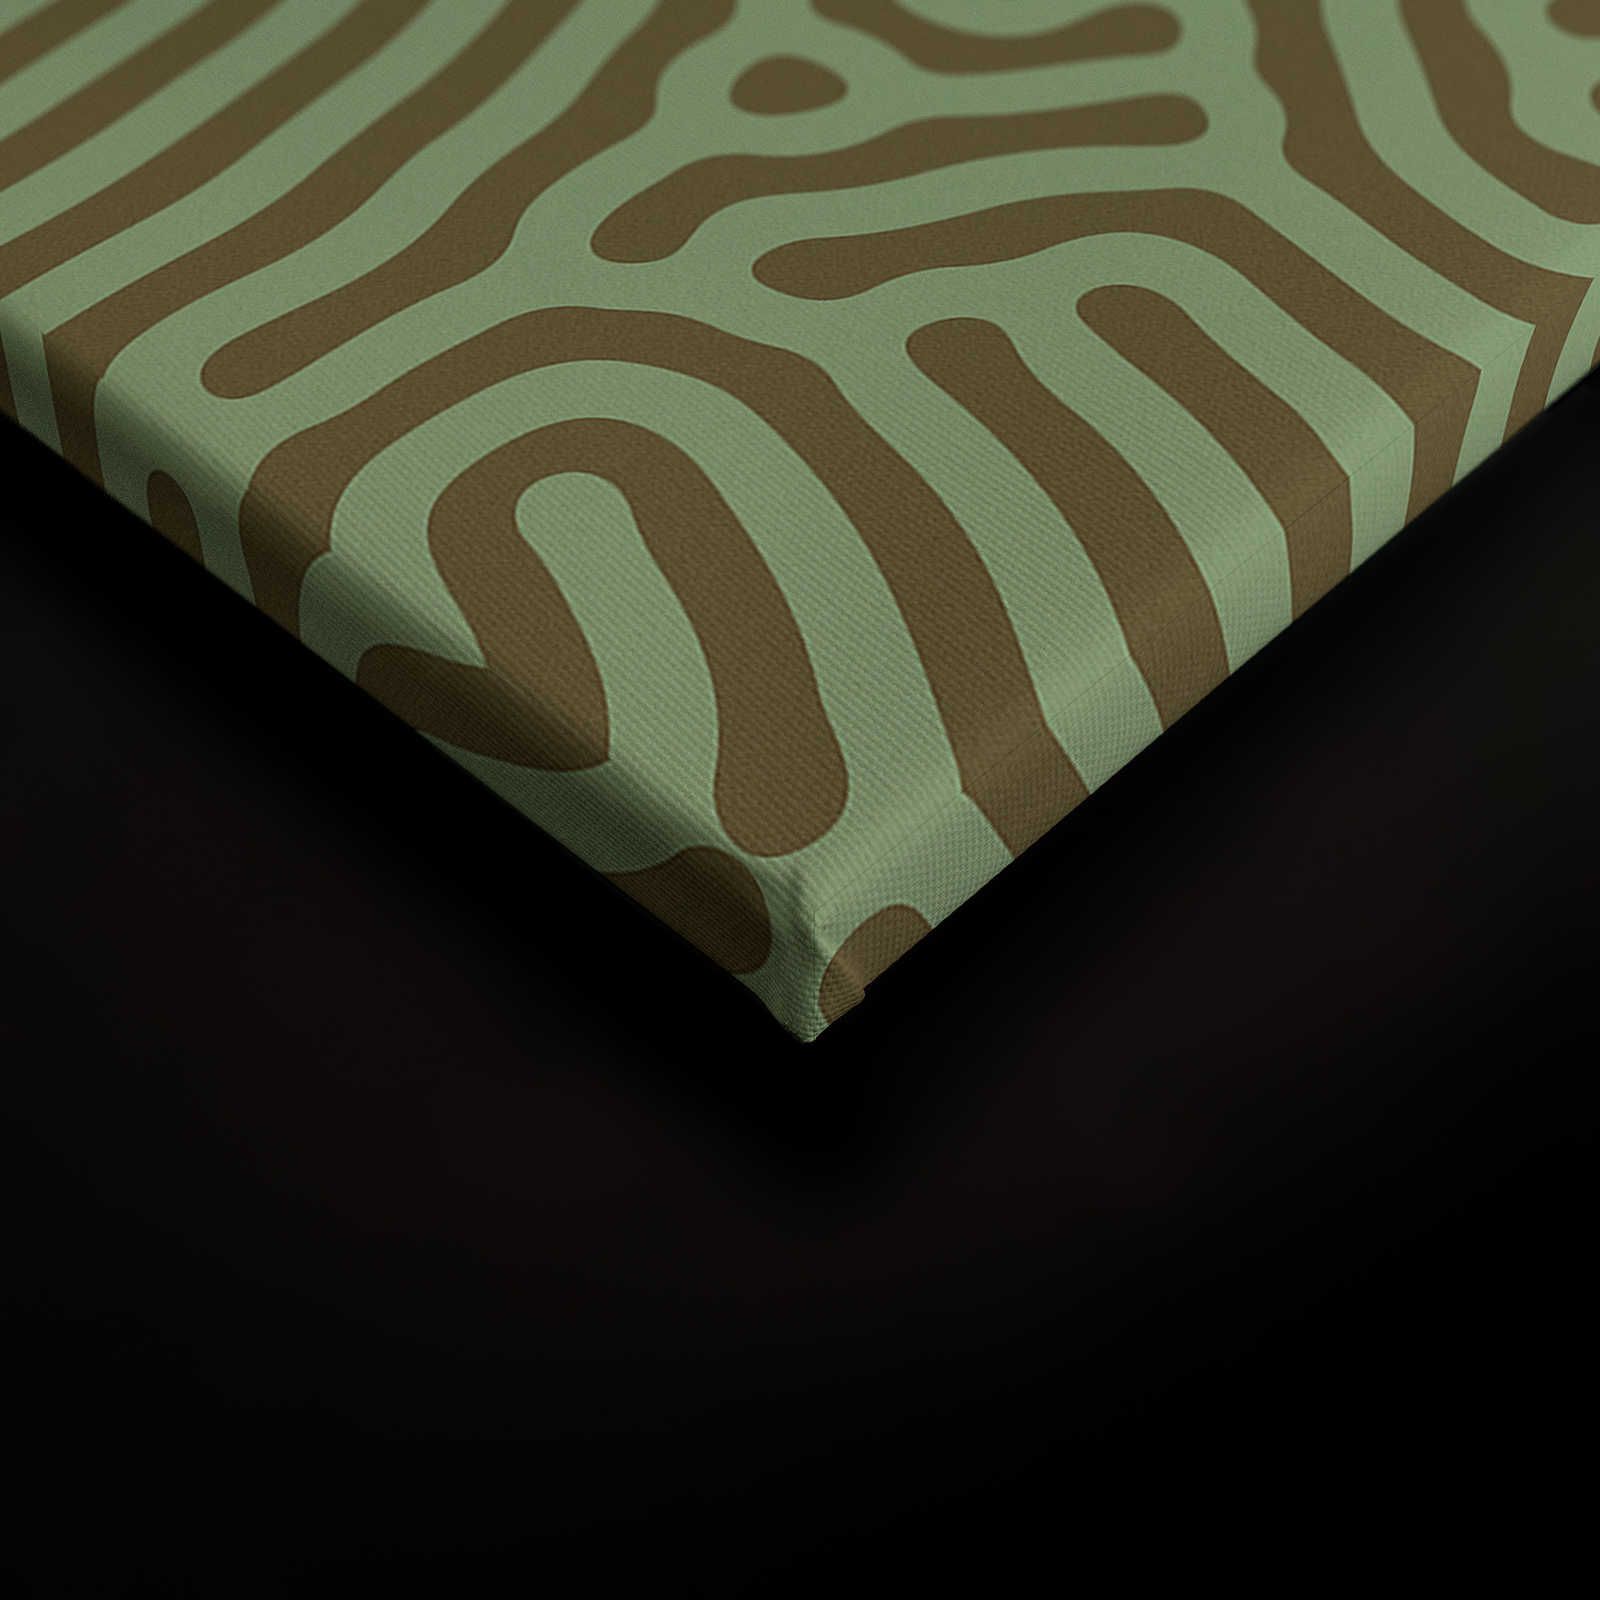             Sahel 1 - Toile verte motif labyrinthe vert sauge - 0,90 m x 0,60 m
        